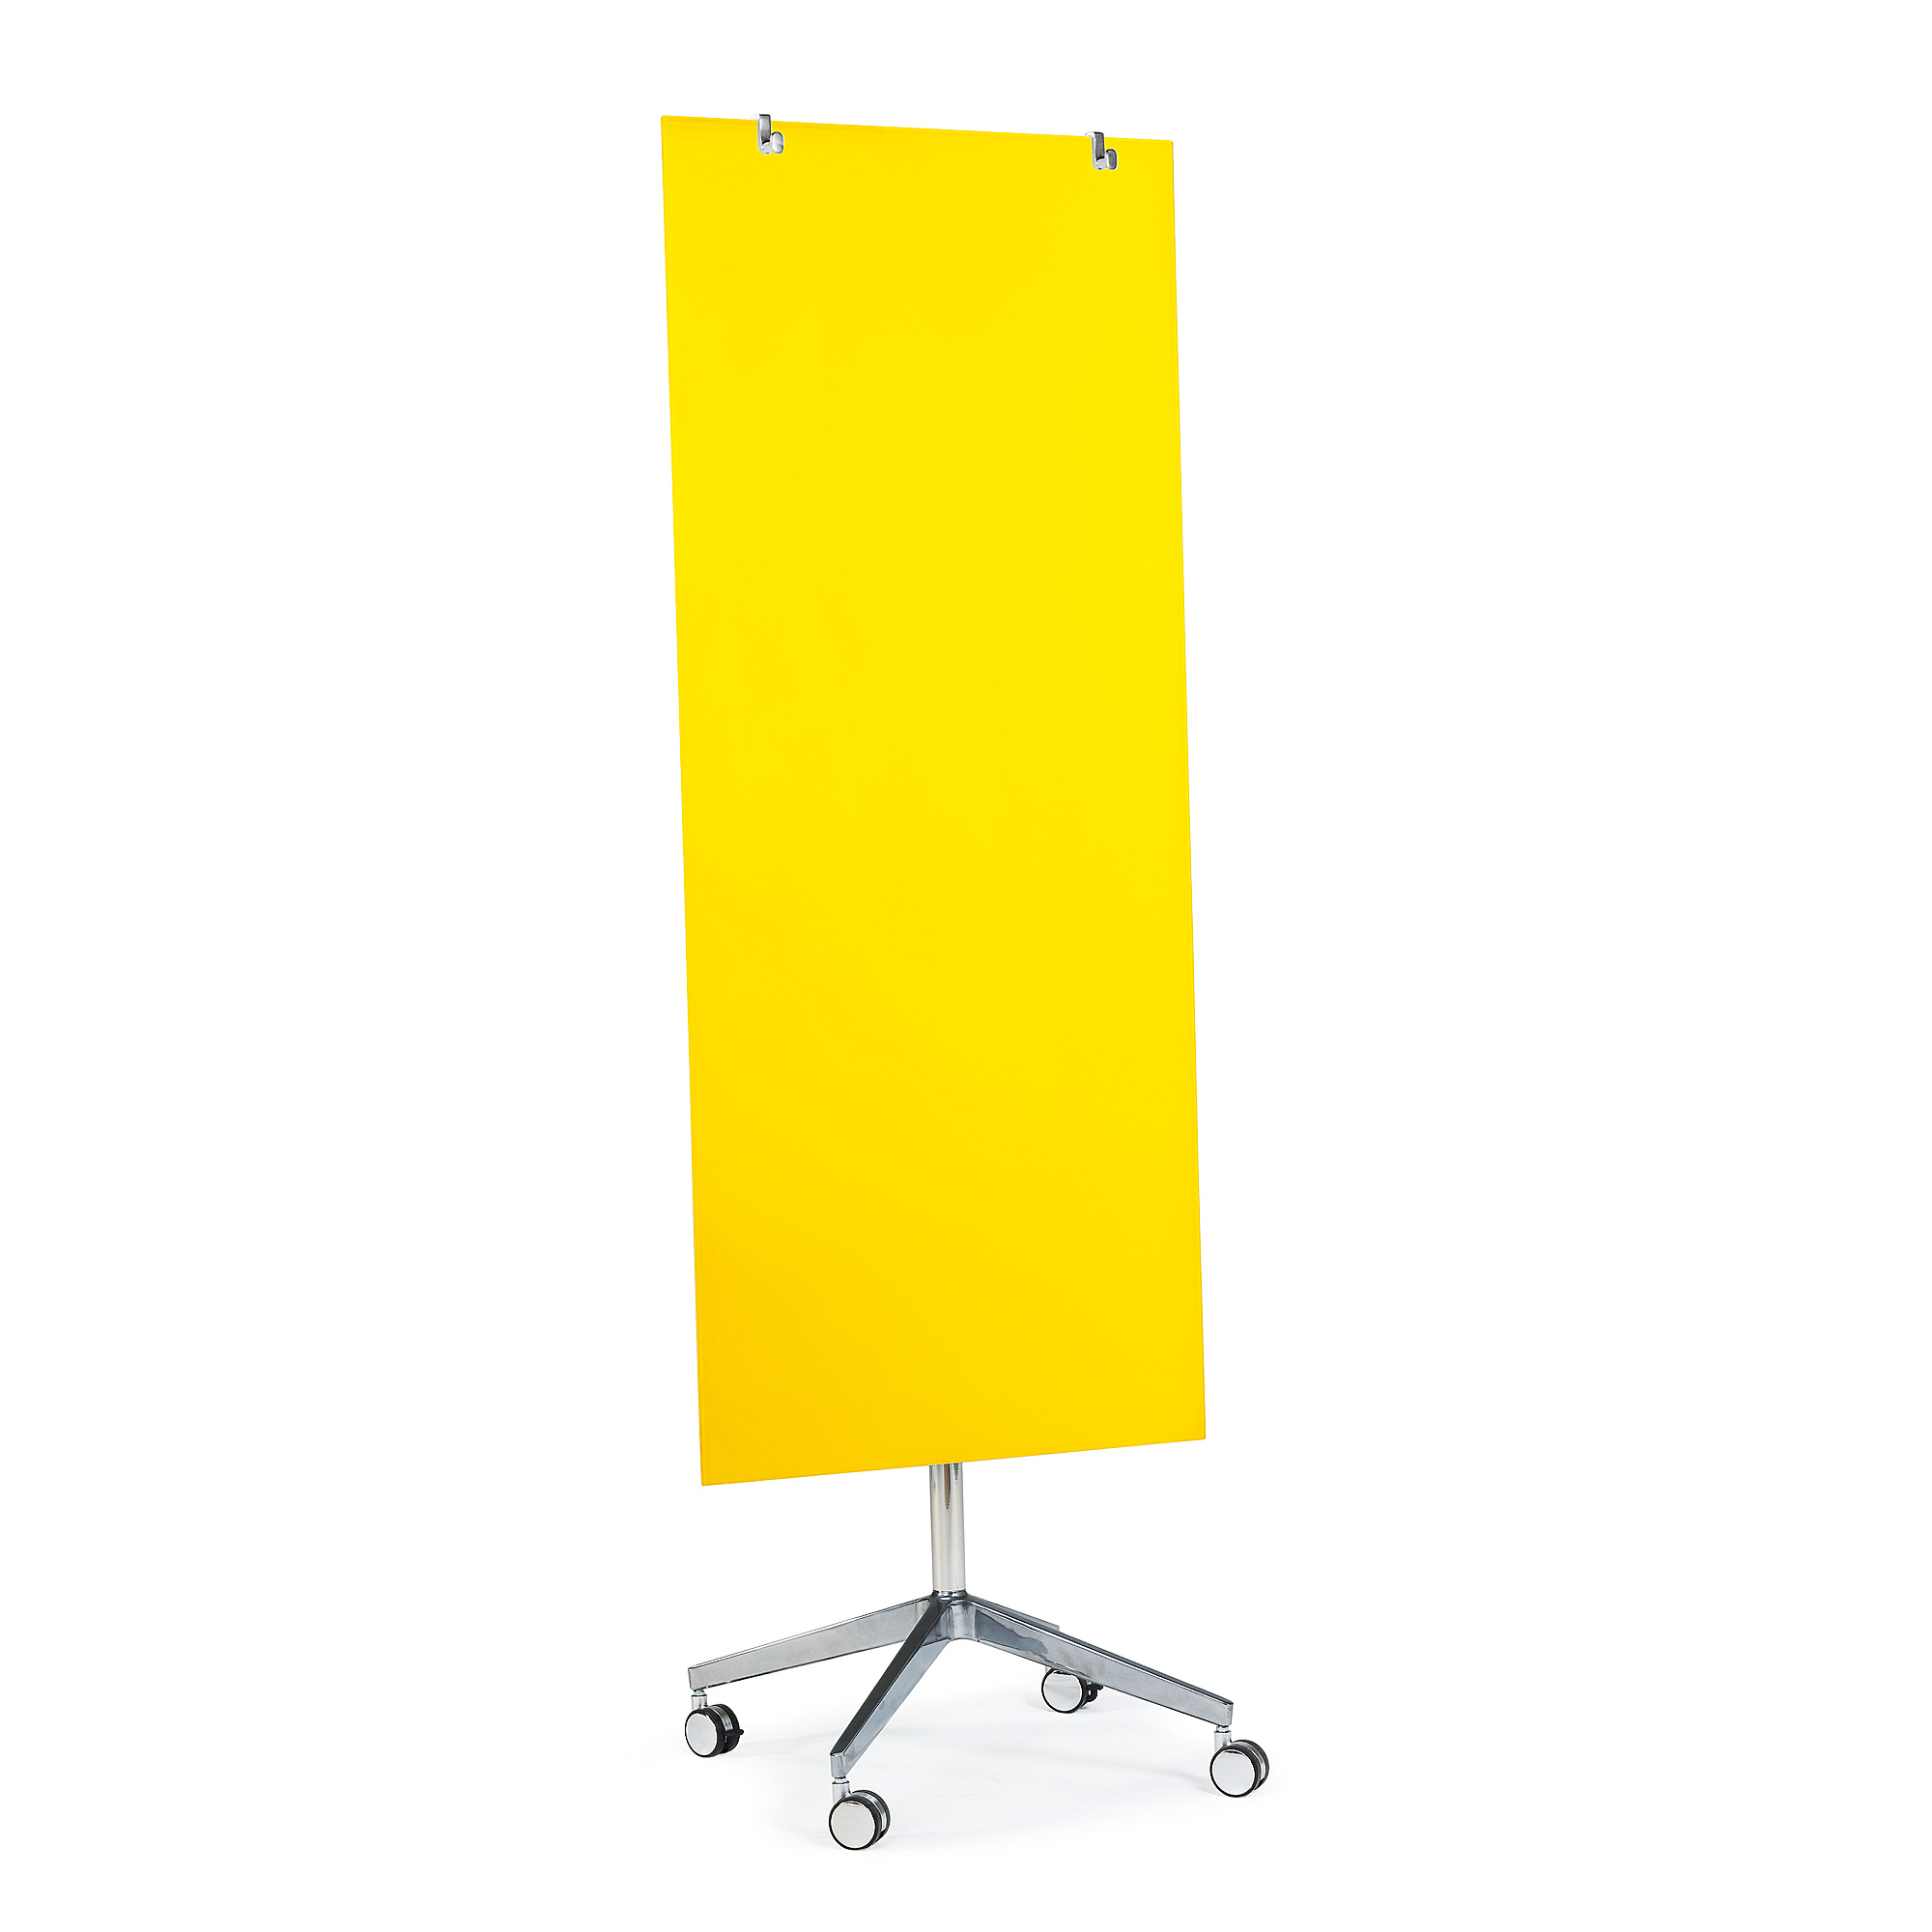 Mobilní skleněná tabule STELLA, magnetická, žlutá